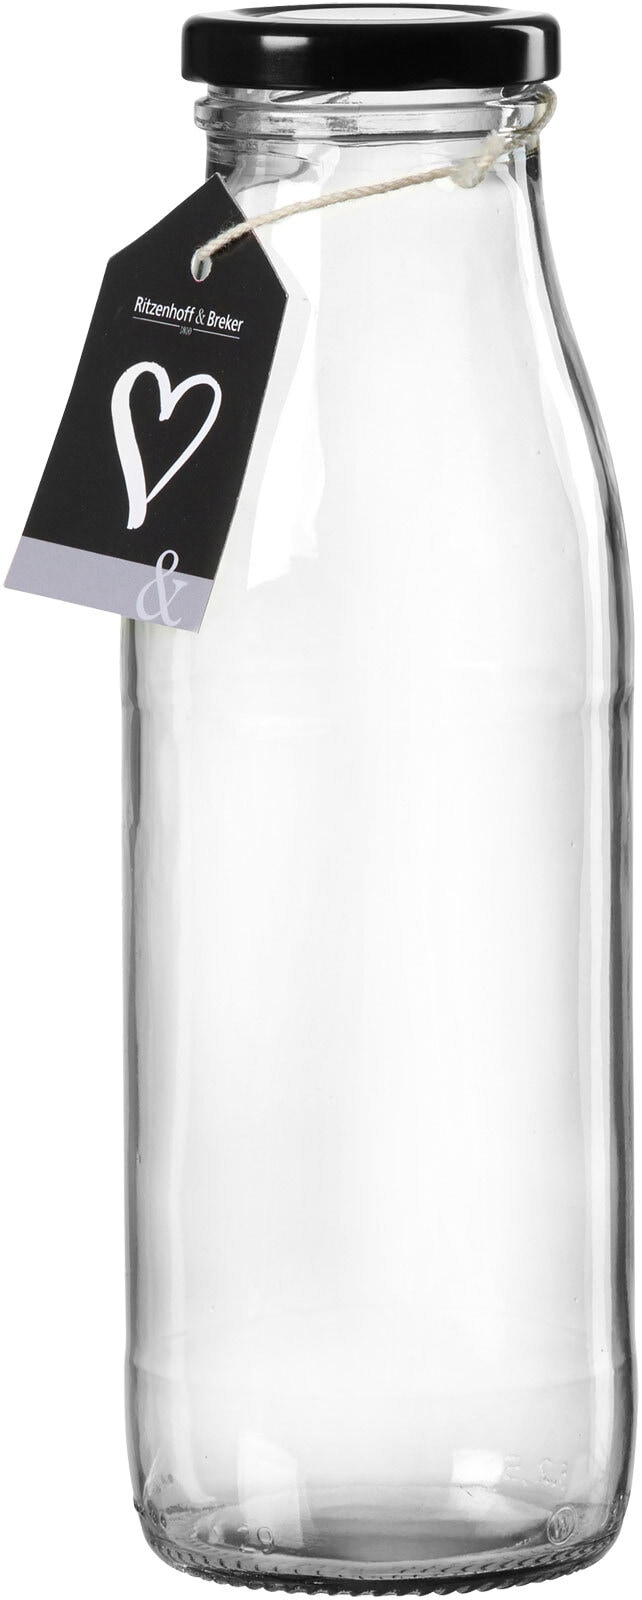 Ritzenhoff & Breker Milchflasche MARA 500 ml rund Glas